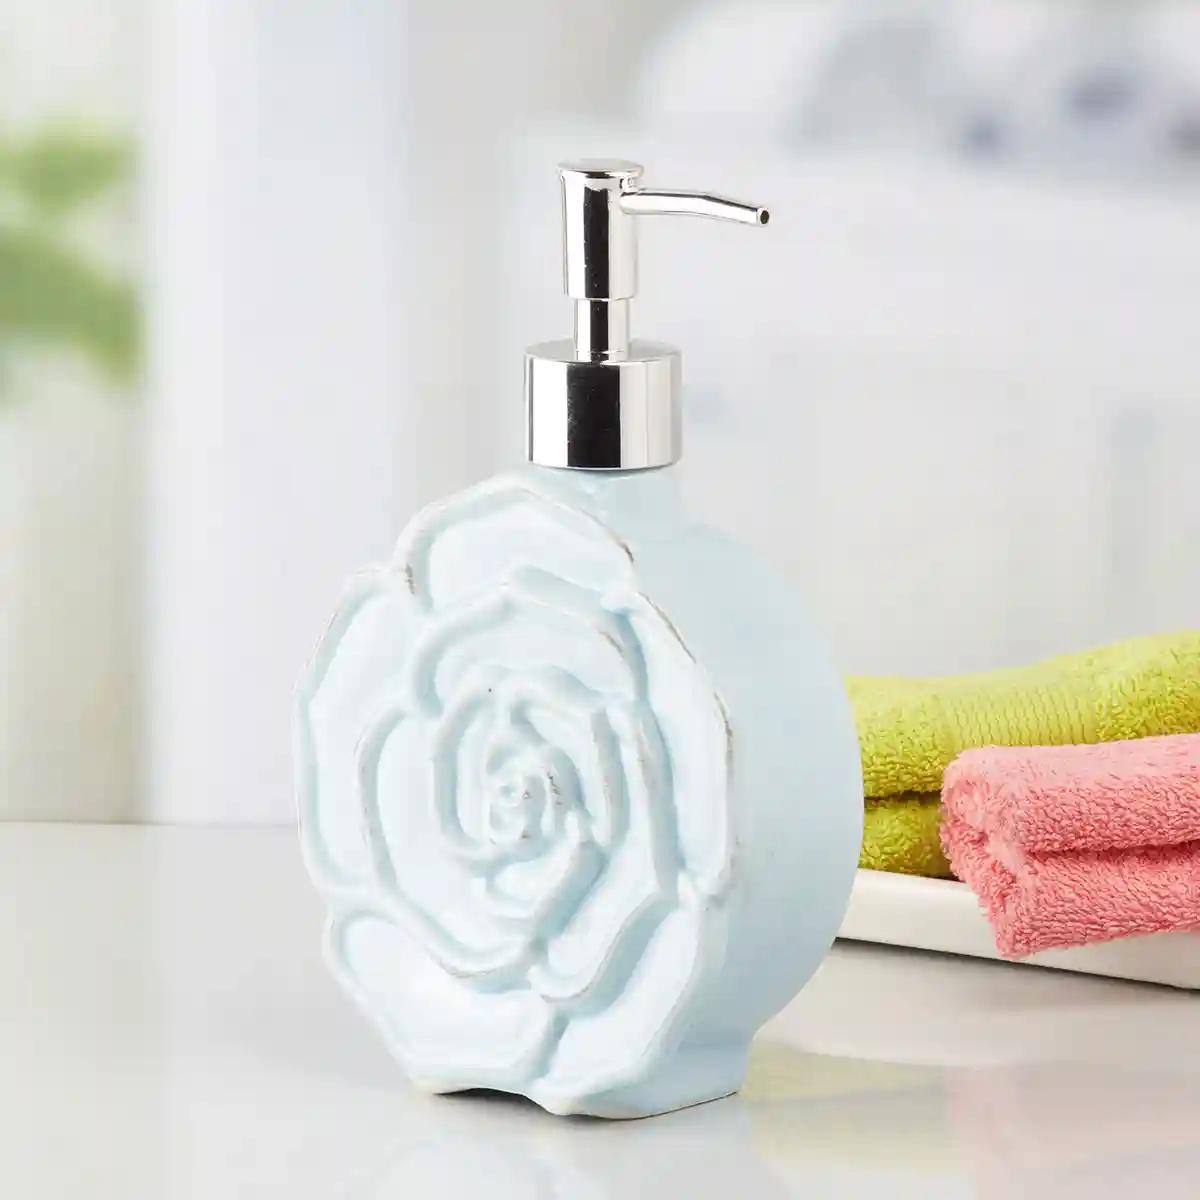 Kookee Ceramic Soap Dispenser for Bathroom handwash, refillable pump bottle for Kitchen hand wash basin, Set of 2 - Blue (7959)